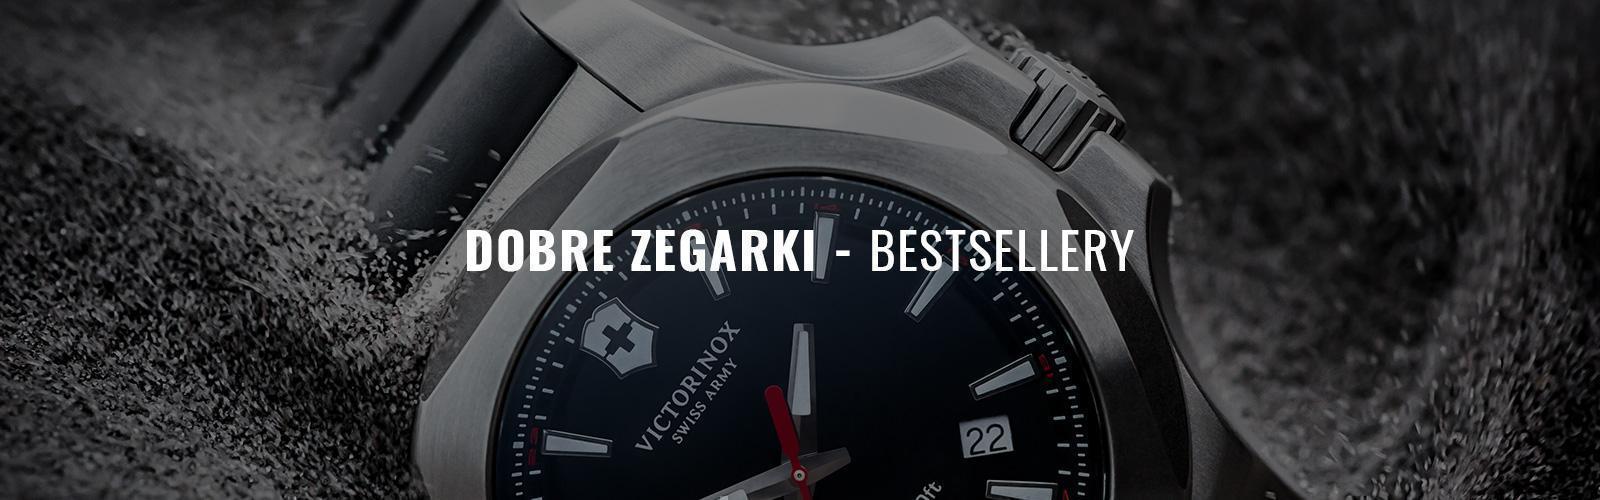 Dobre zegarki - ranking najlepszych zegarków